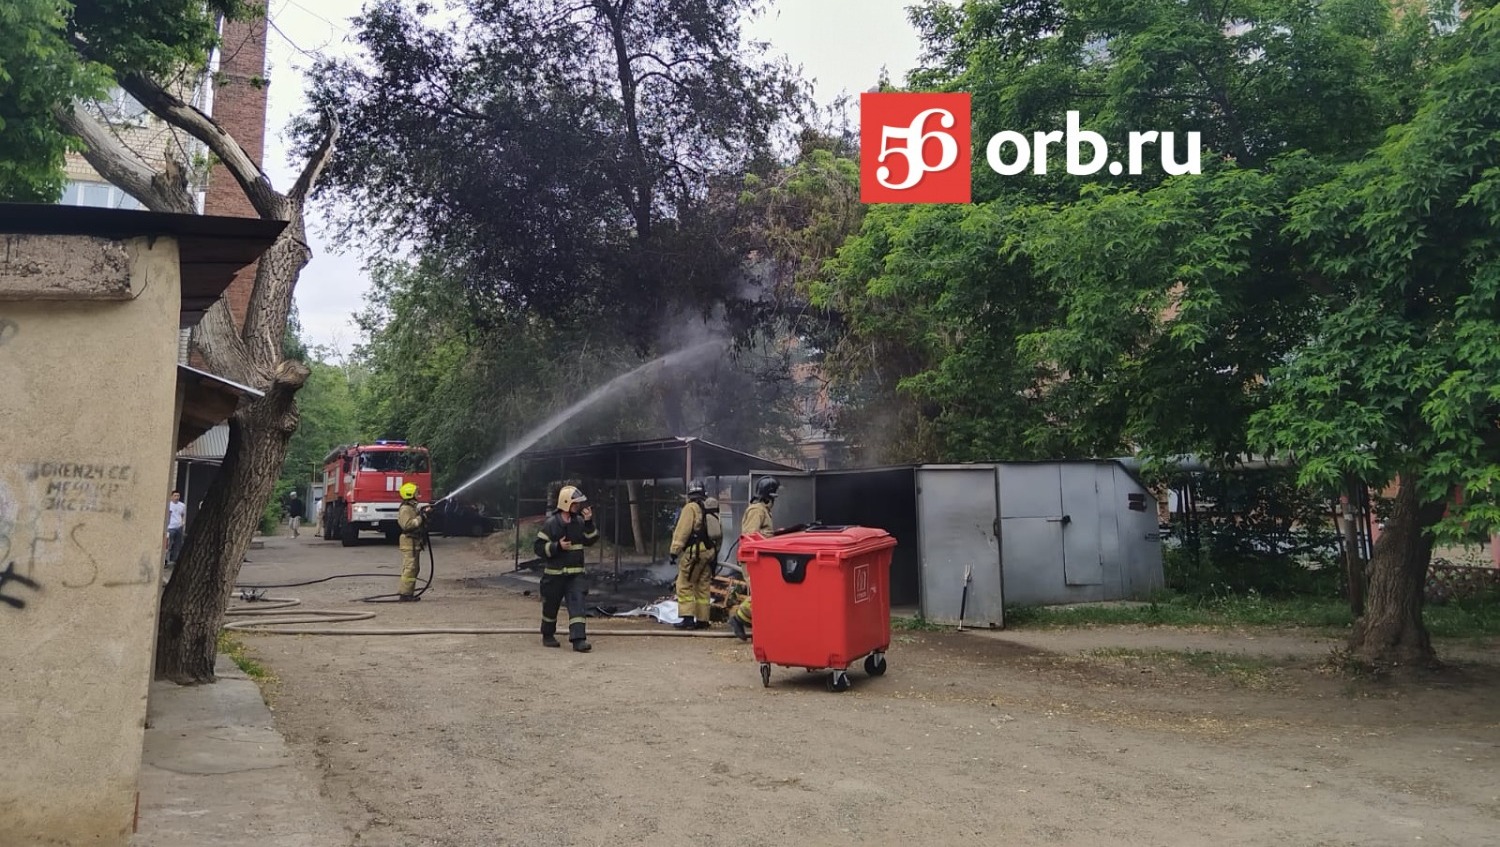 Пожарные быстро прибыли к месту пожара и стали тушить мусорку